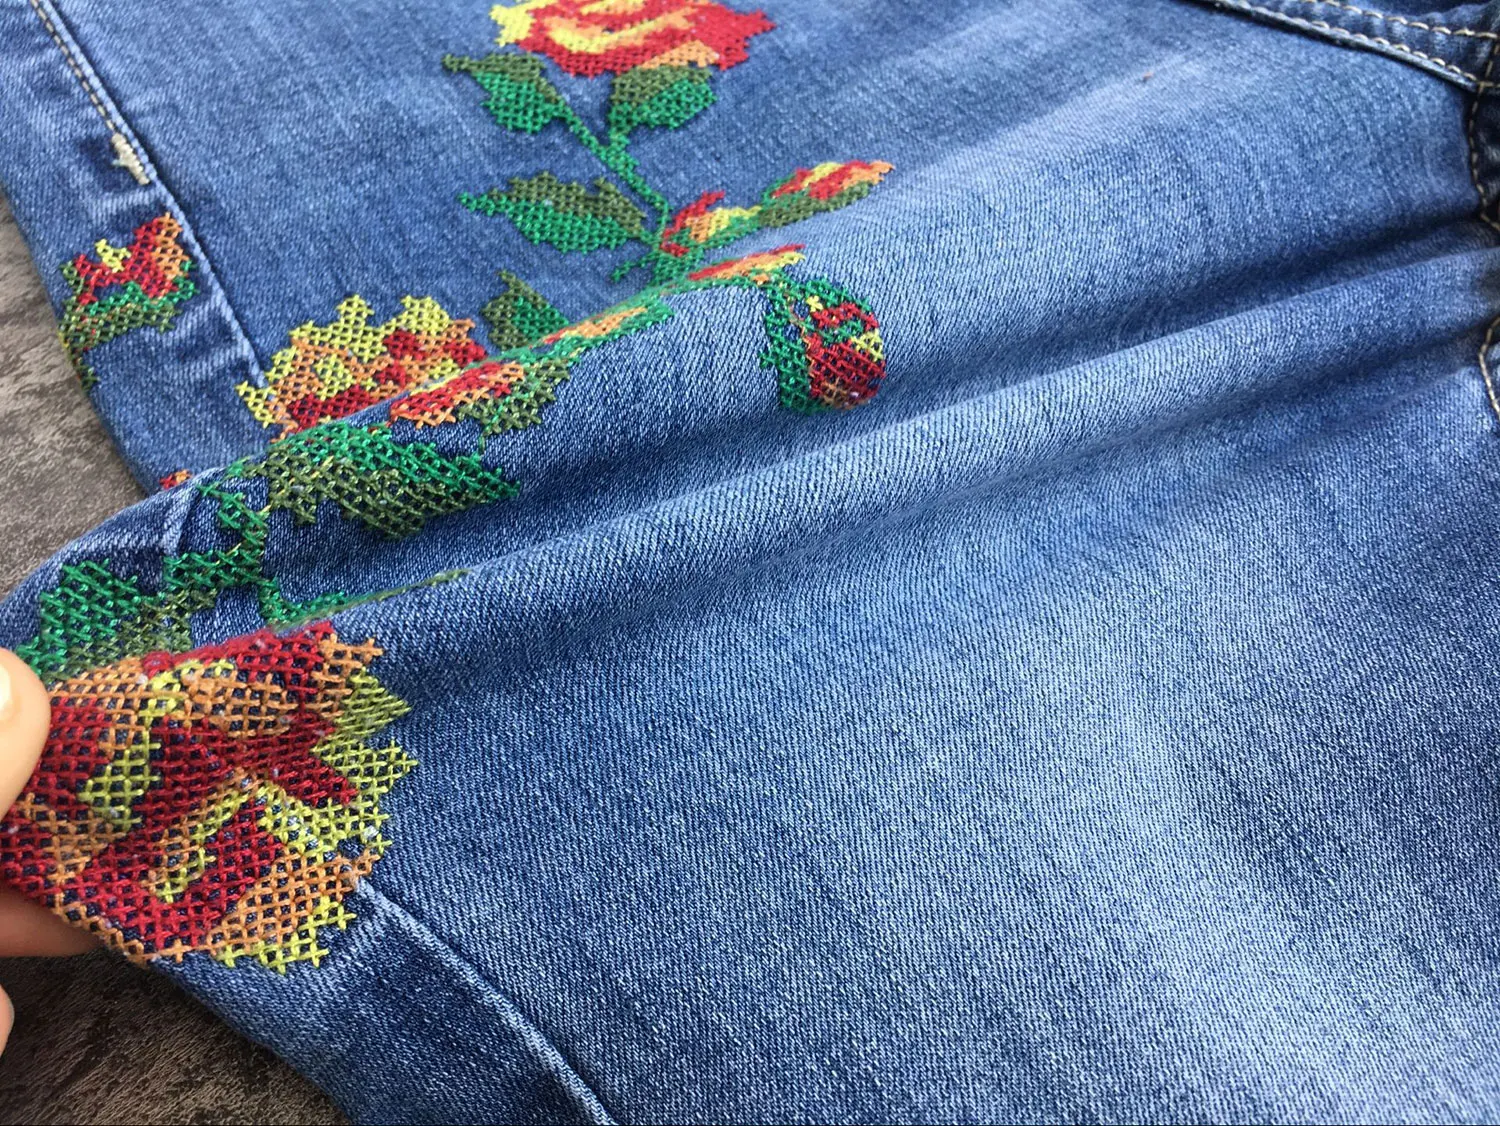 Sherhure джинсы цветочной вышивкой Высокая Талия Для женщин обтягивающие джинсы женские ботильоны Длина джинсы джинсовые штаны Pantalon Femme